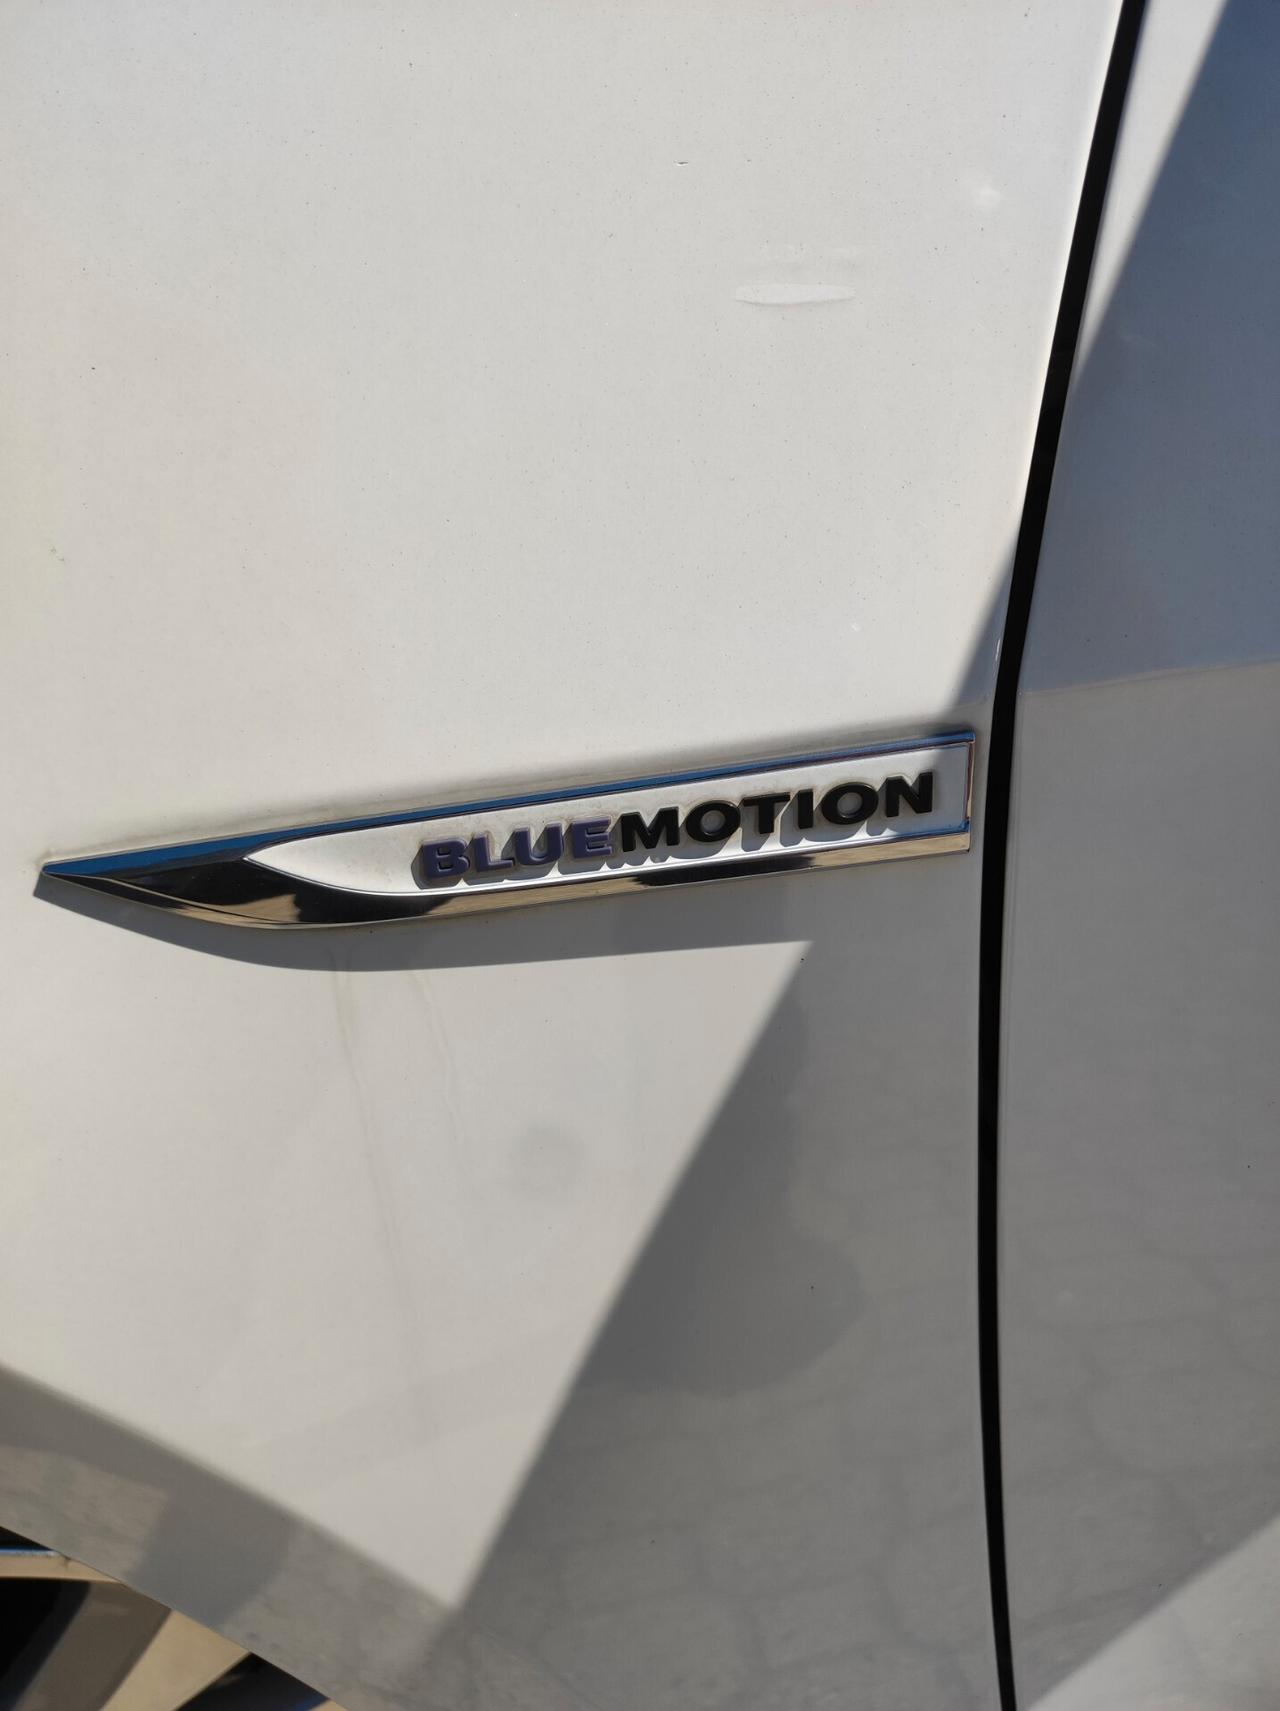 Volkswagen Golf 1.4 TGI 5p. Trendline BlueMotion